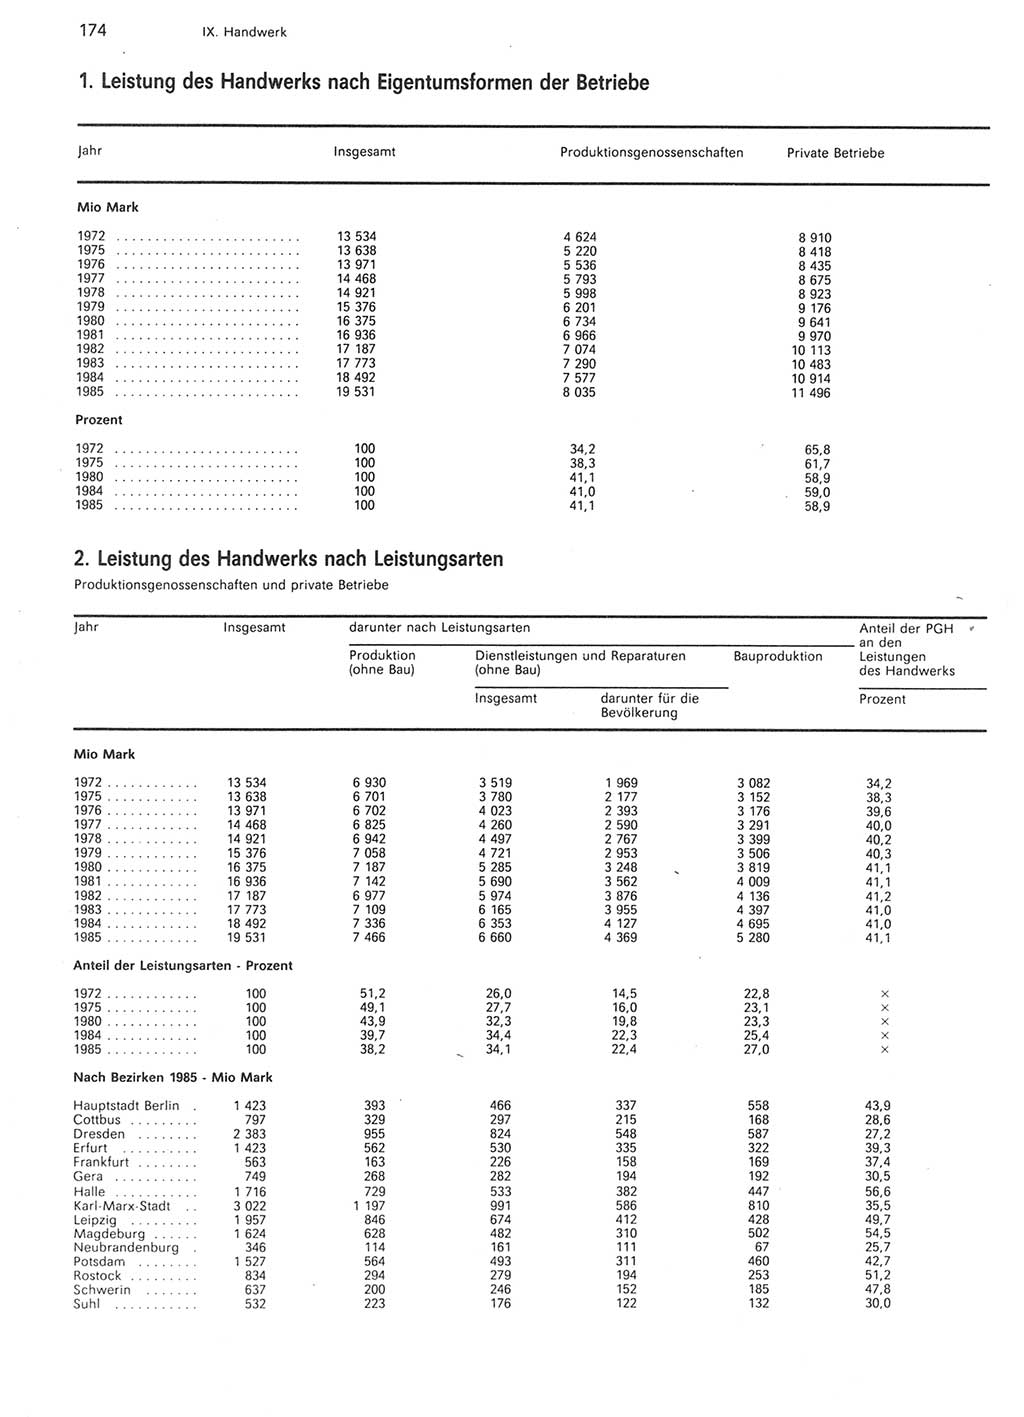 Statistisches Jahrbuch der Deutschen Demokratischen Republik (DDR) 1986, Seite 174 (Stat. Jb. DDR 1986, S. 174)